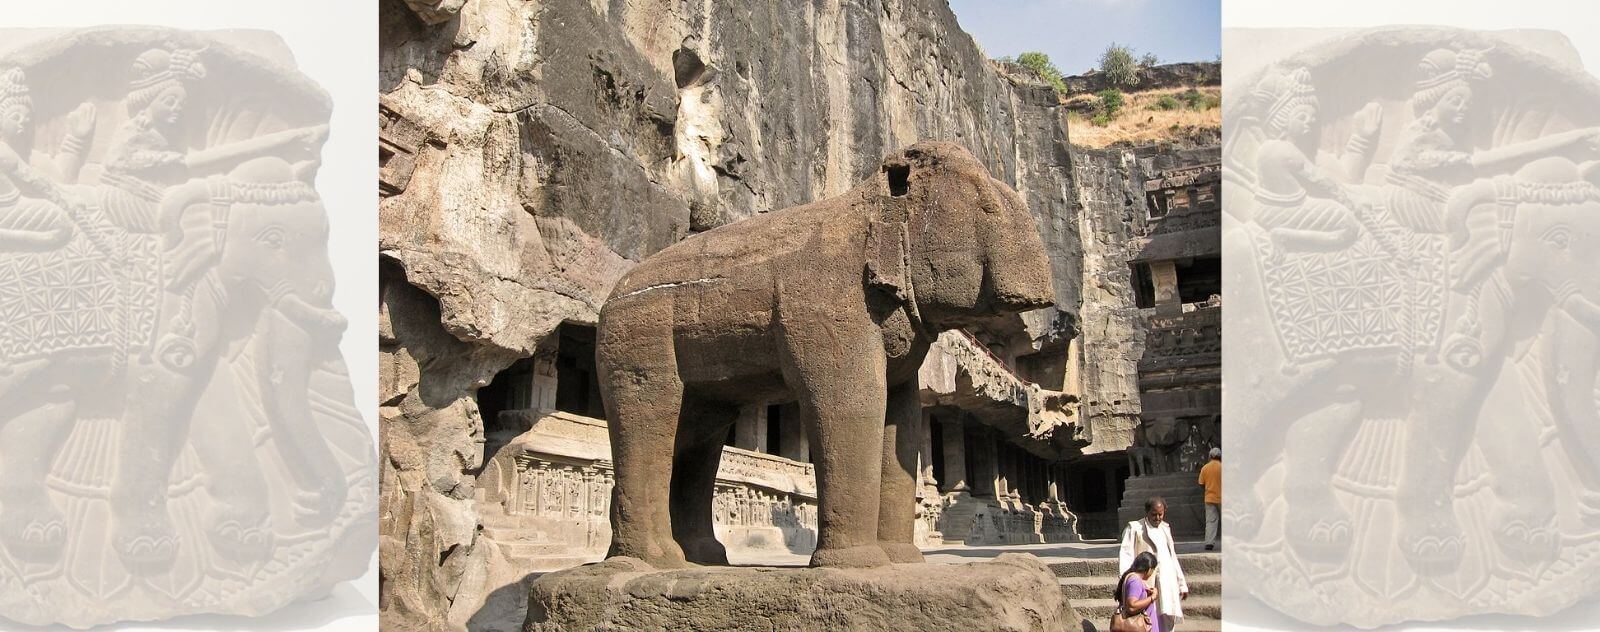 Les Éléphants dans la Civilisation Indu (Sculpture Éléphant)